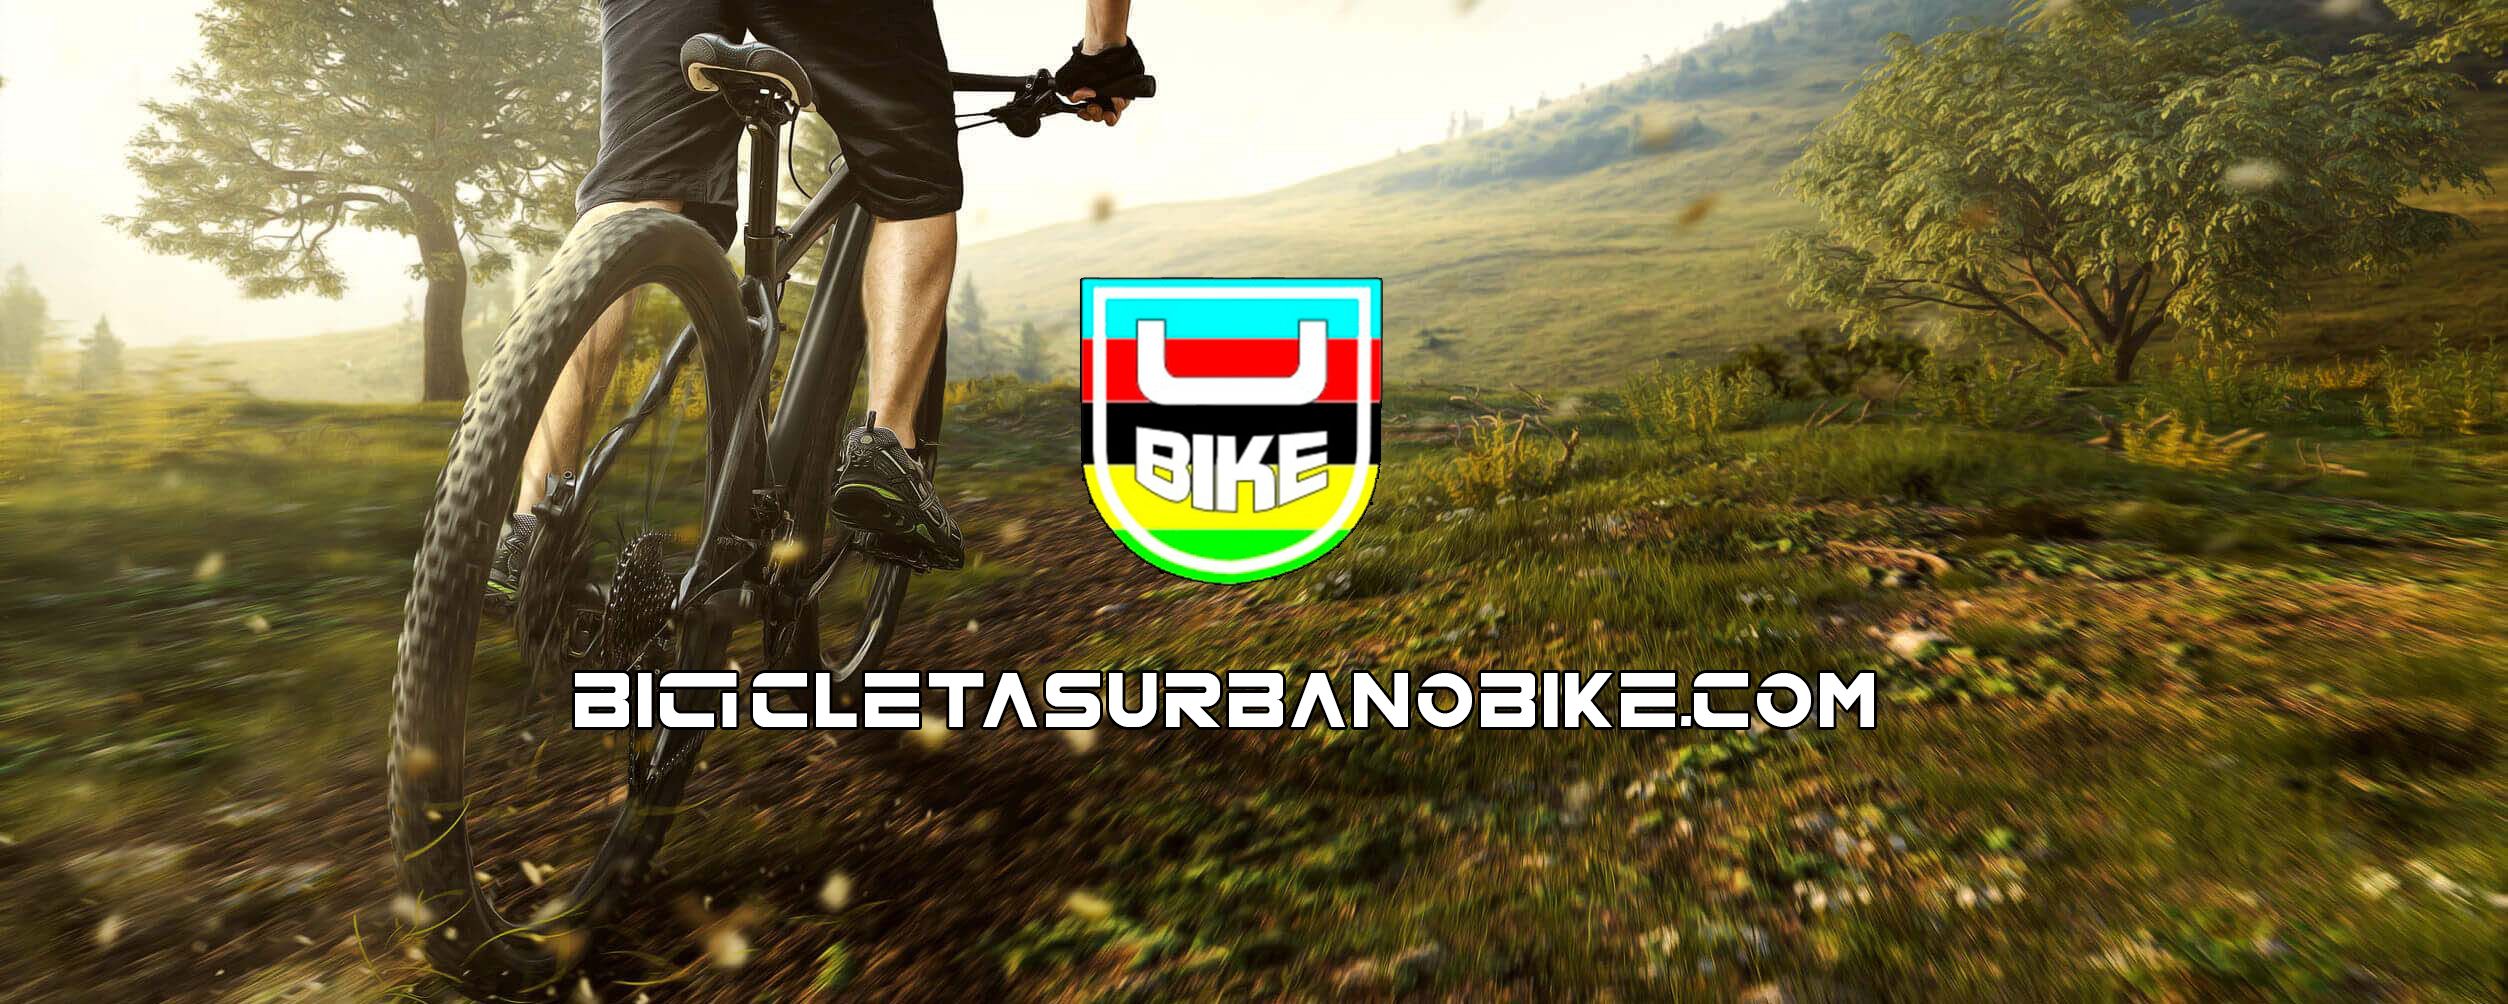 Urbanobike Slide 2